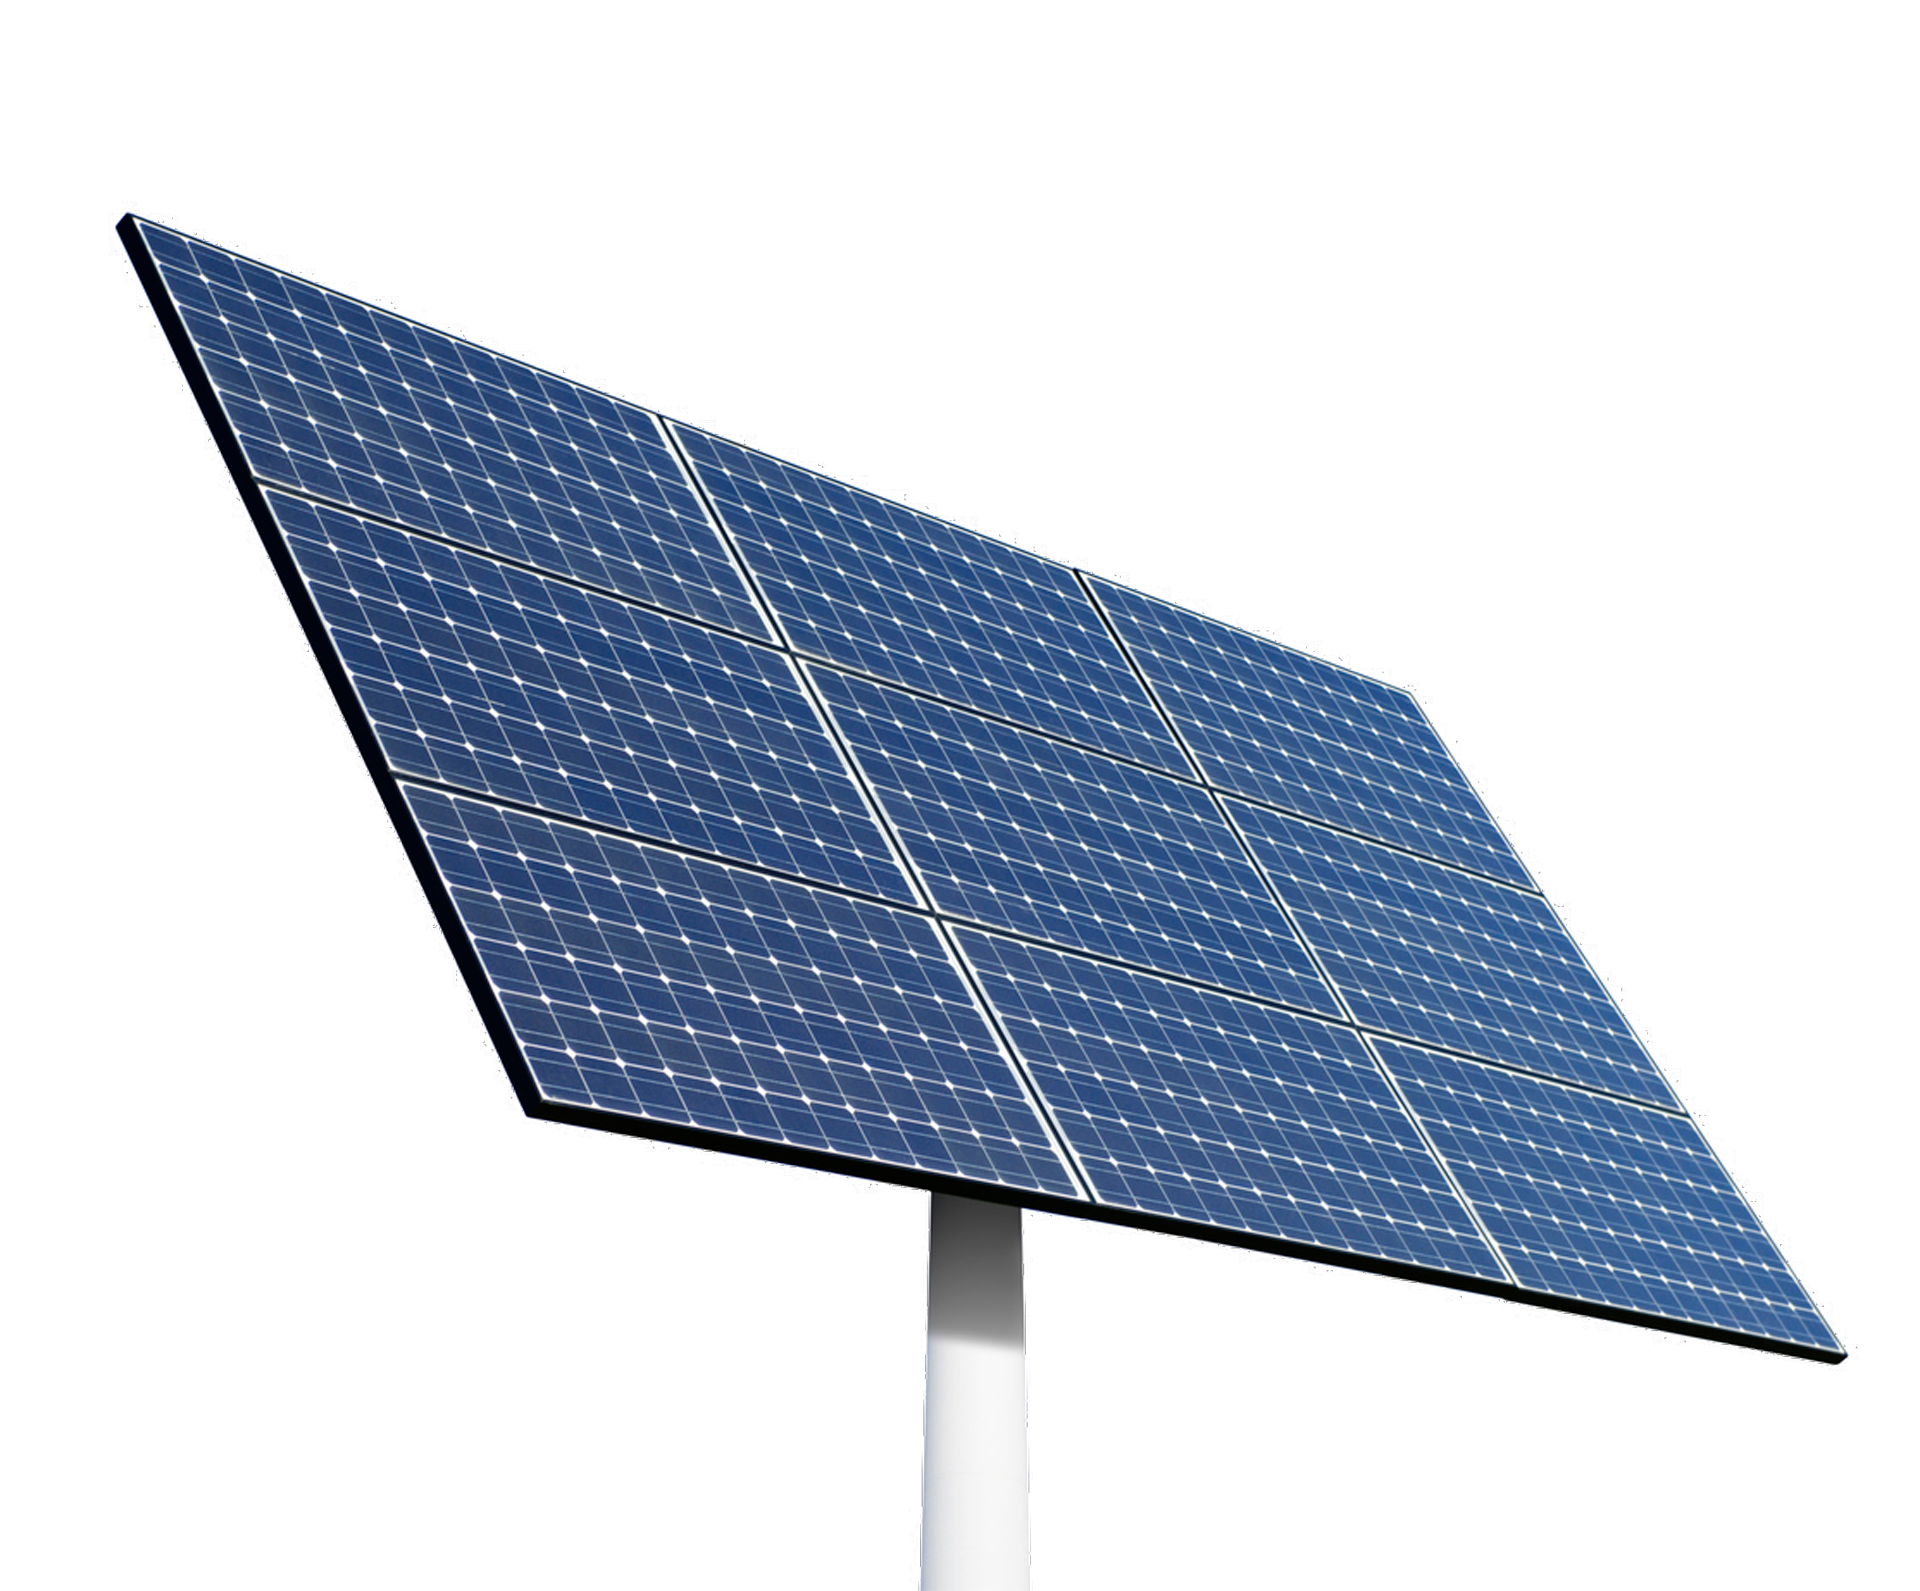 pannello-fotovoltaico